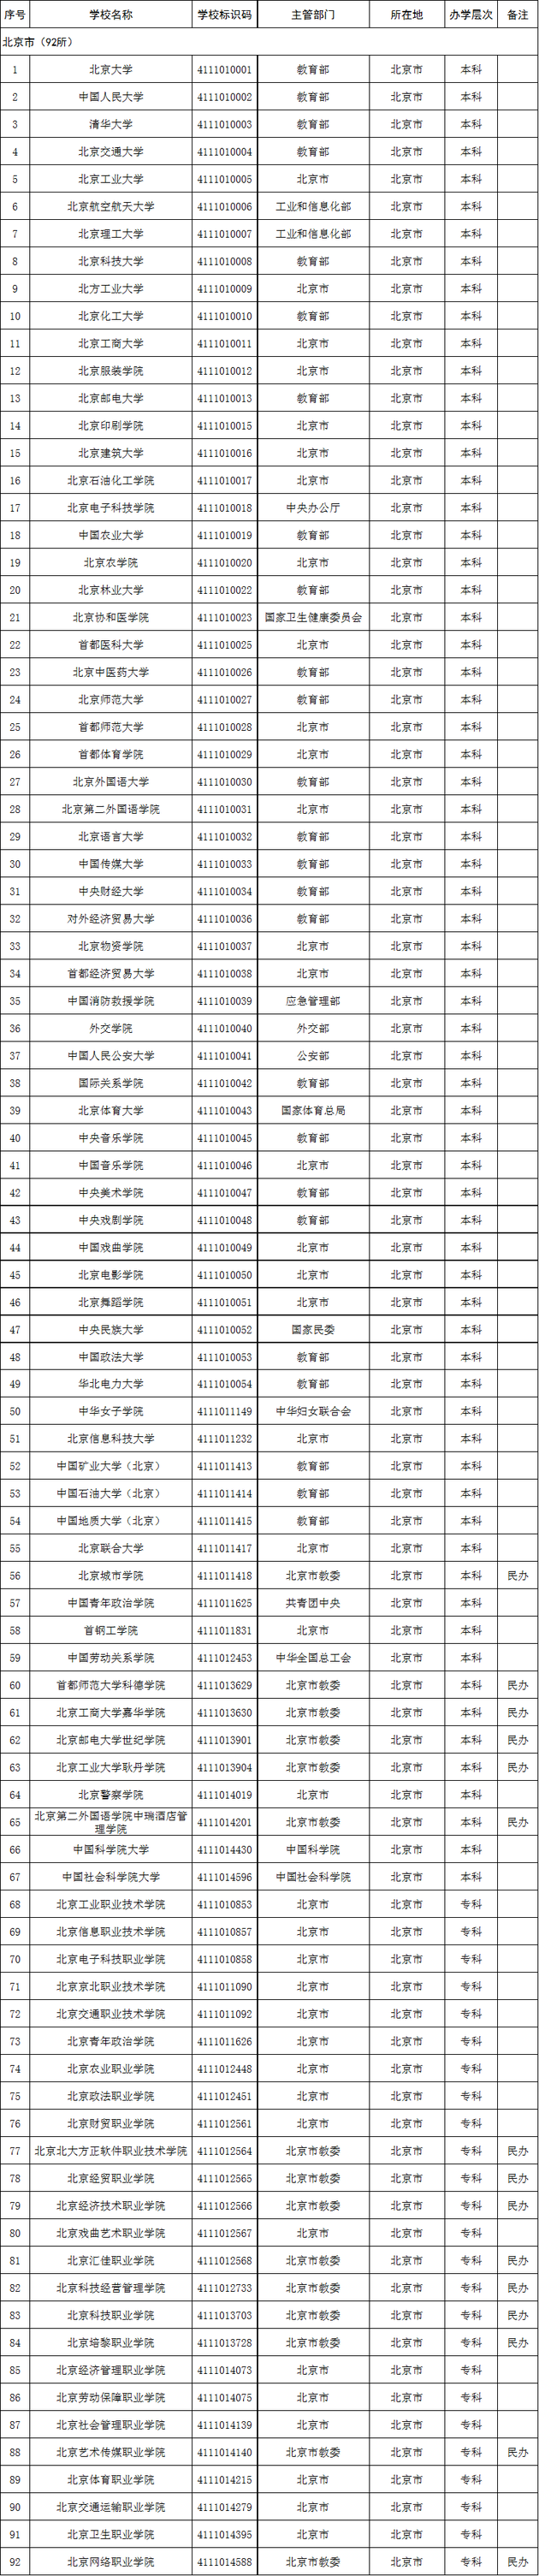 北京市2020年高校名单(92所)